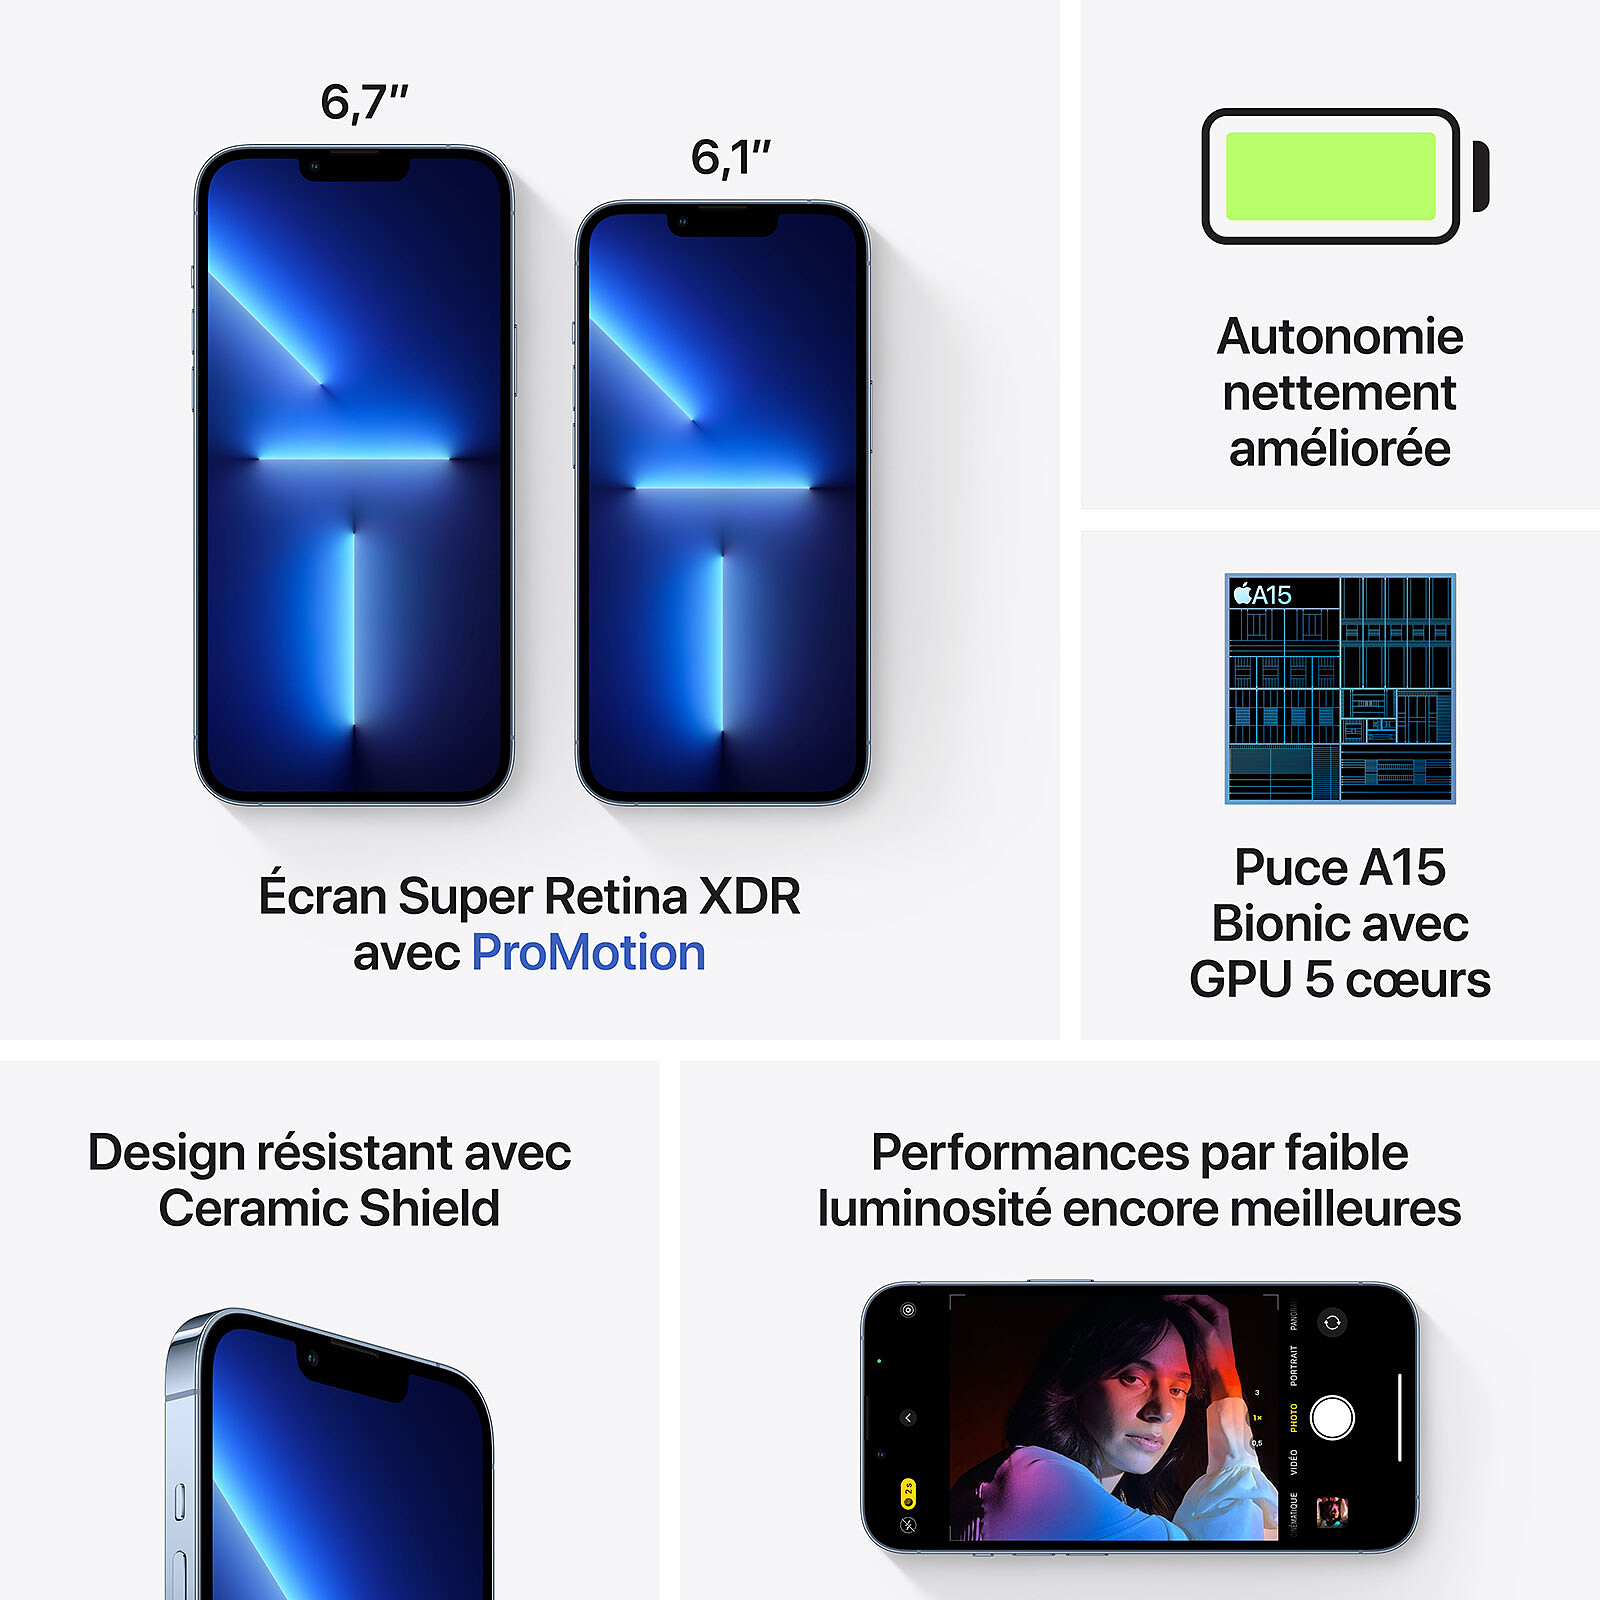 iPhone 13 Pro 128 Go - Bleu Alpin - Débloqué